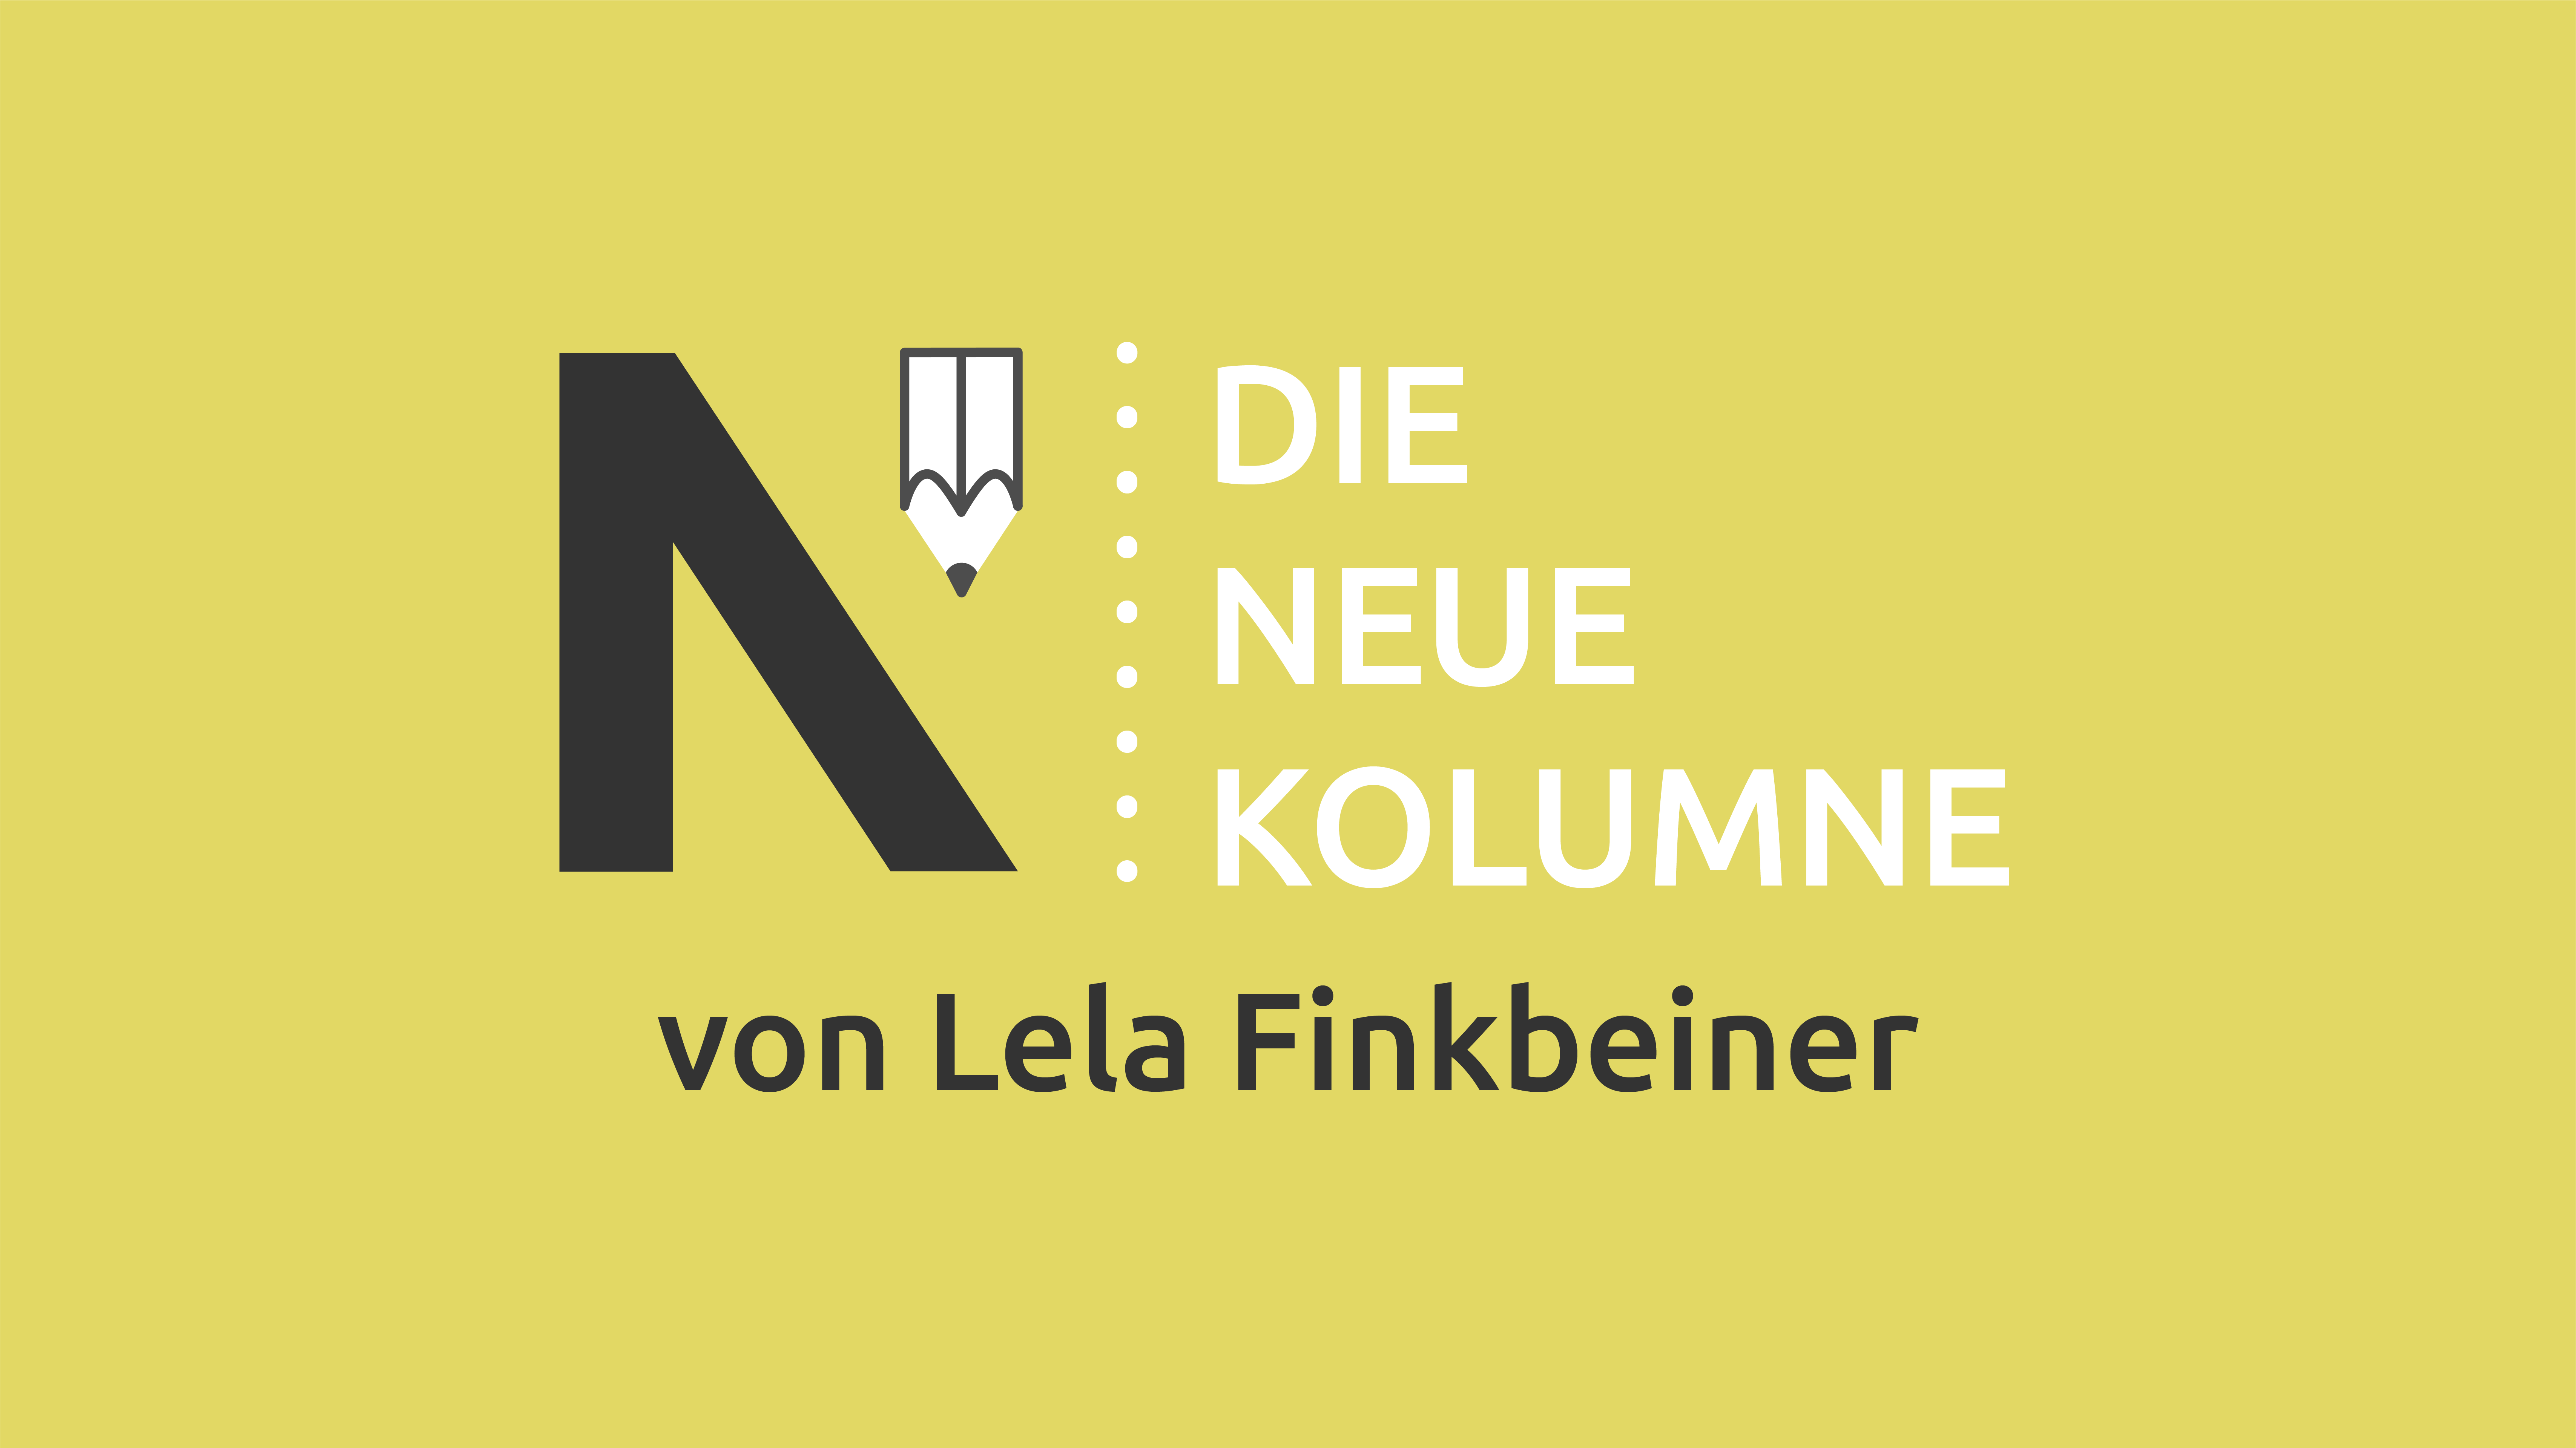 Das Logo von die neue Norm auf gelbem Grund. Rechts davon steht: Die Neue Kolumne. Unten steht: Von Lela Finkbeiner.